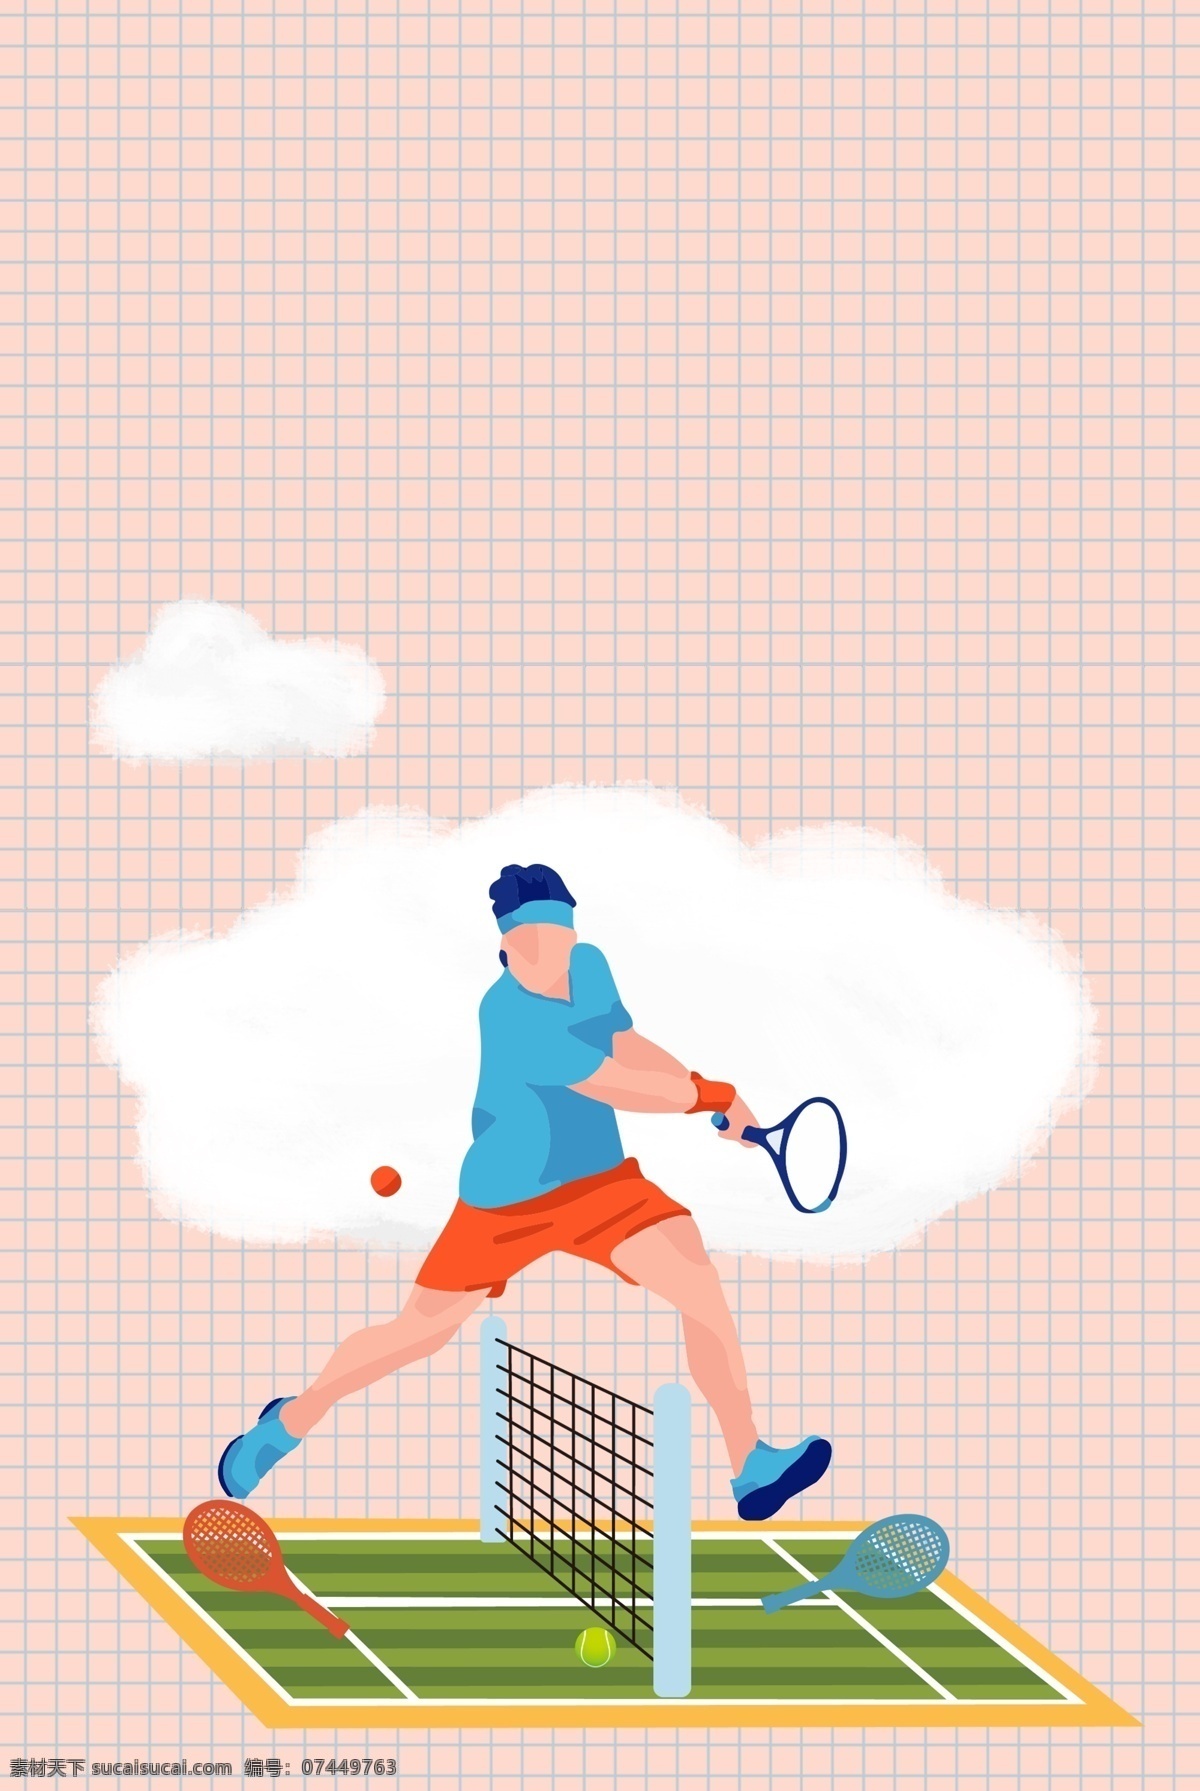 小 清新 粉色 网球 运动 网球场 背景 小清新 运动场 球场背景 网球运动员 学习网球 白云 网球运动